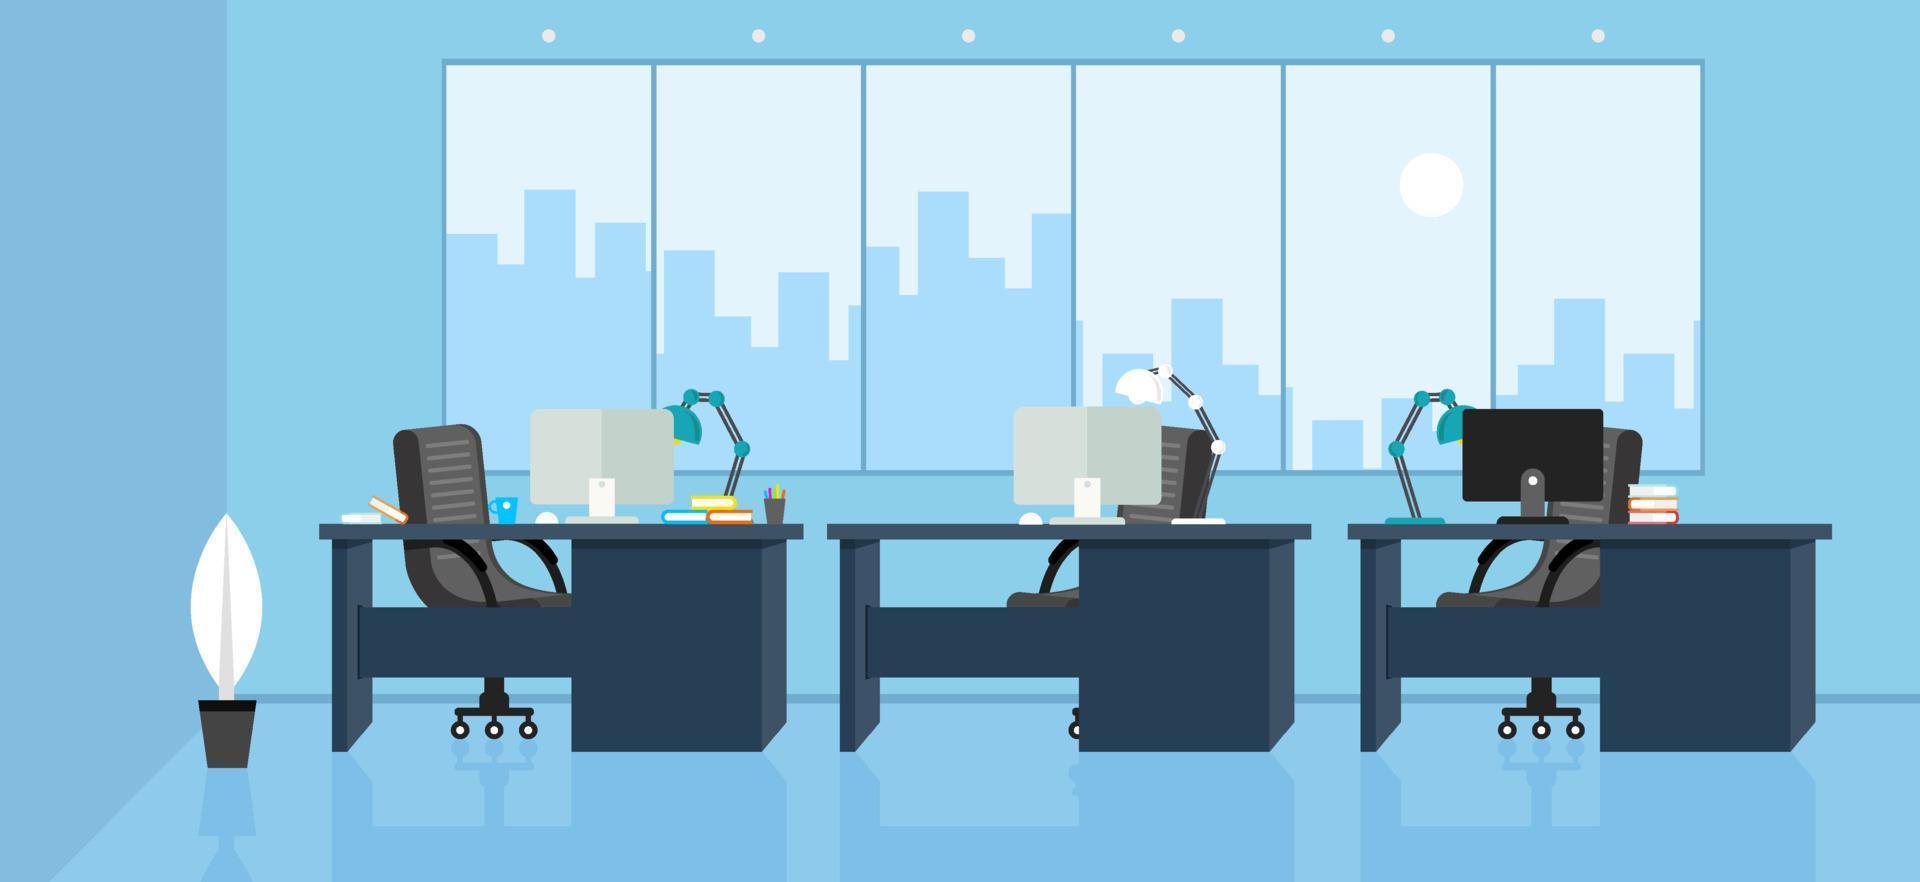 leren en onderwijzen zakelijk kantoor om te werken modern interieur, kantoorkast met computer kleurrijke vectorillustratie in platte cartoon stijl vector design